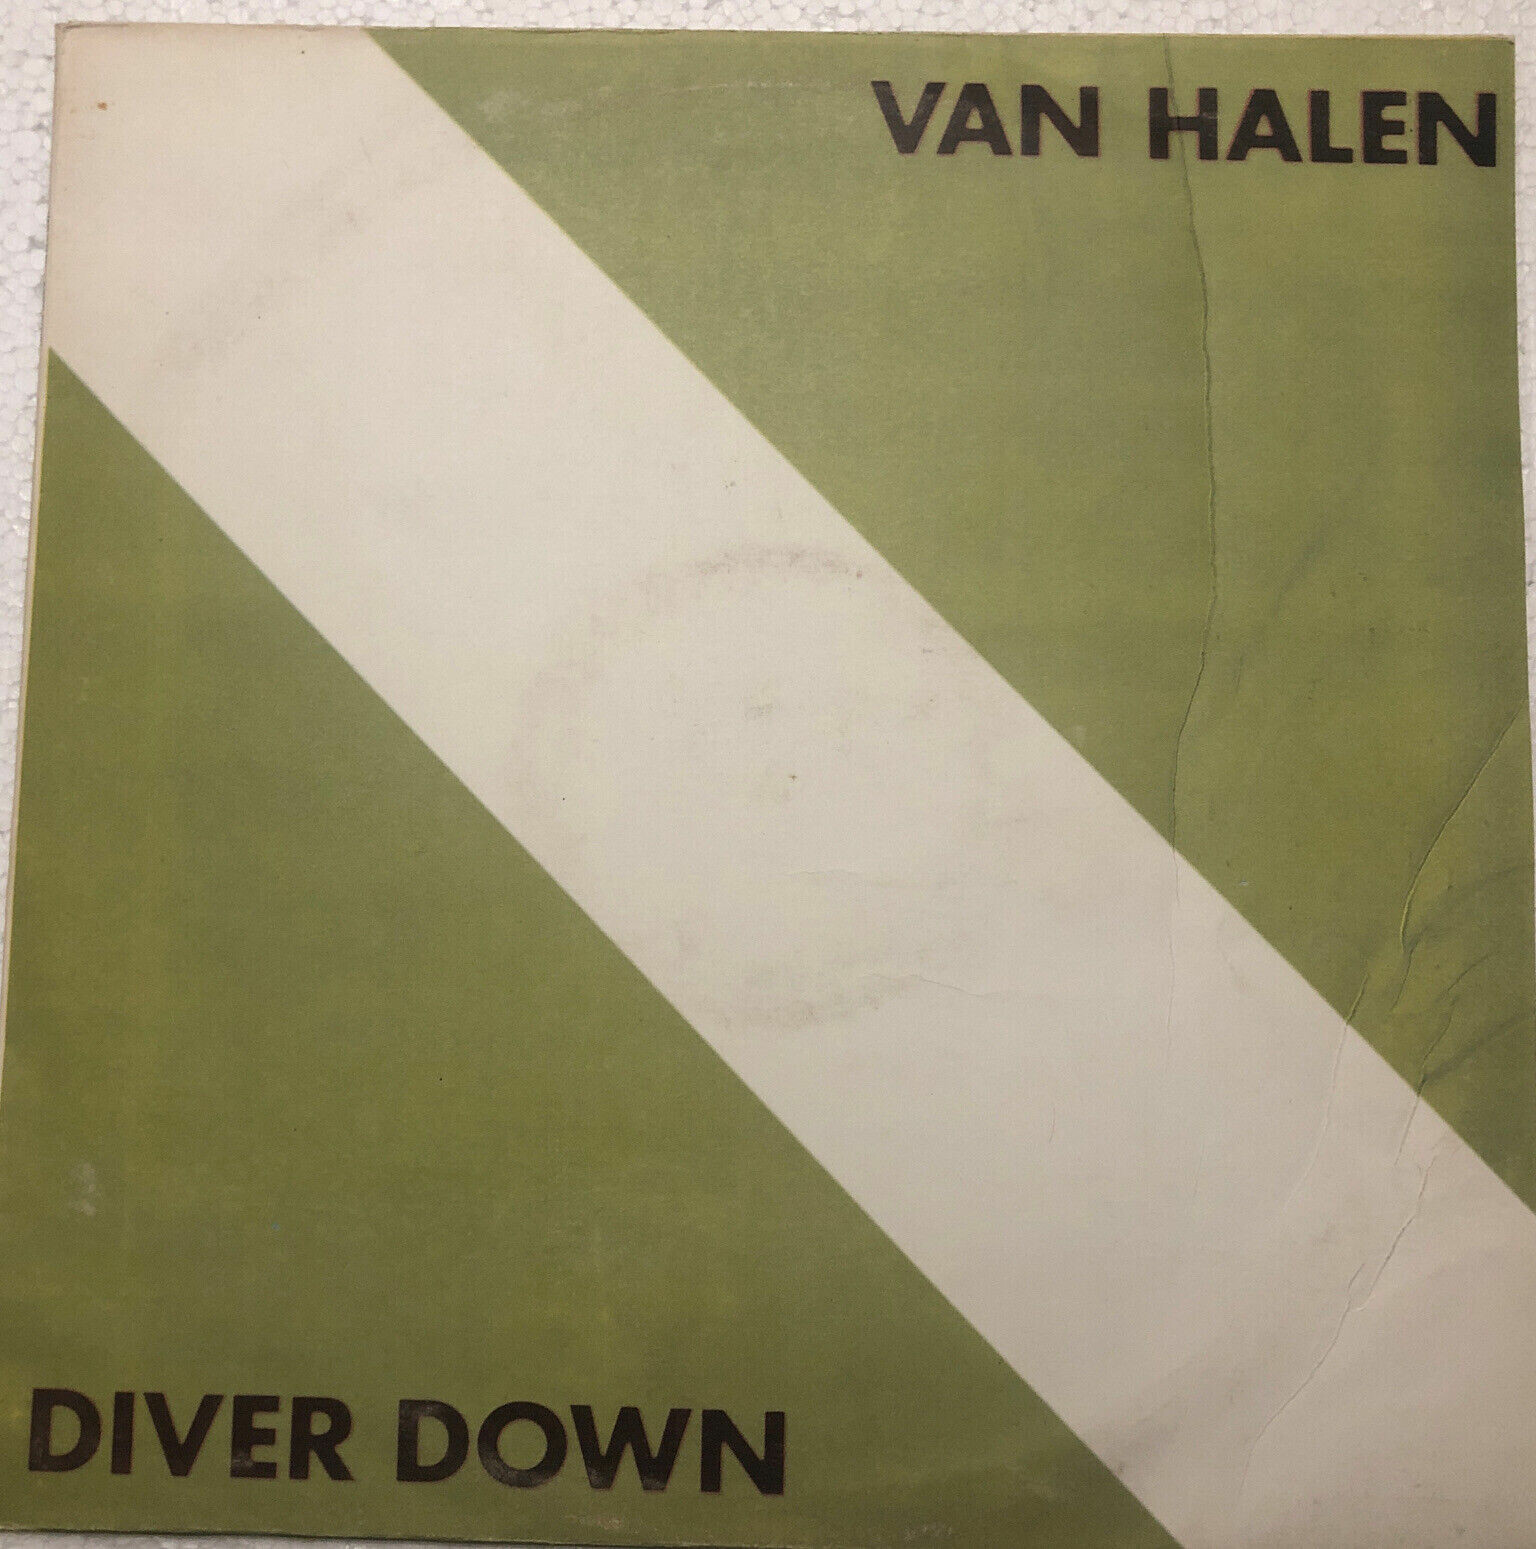 VAN HALEN. Diver Down